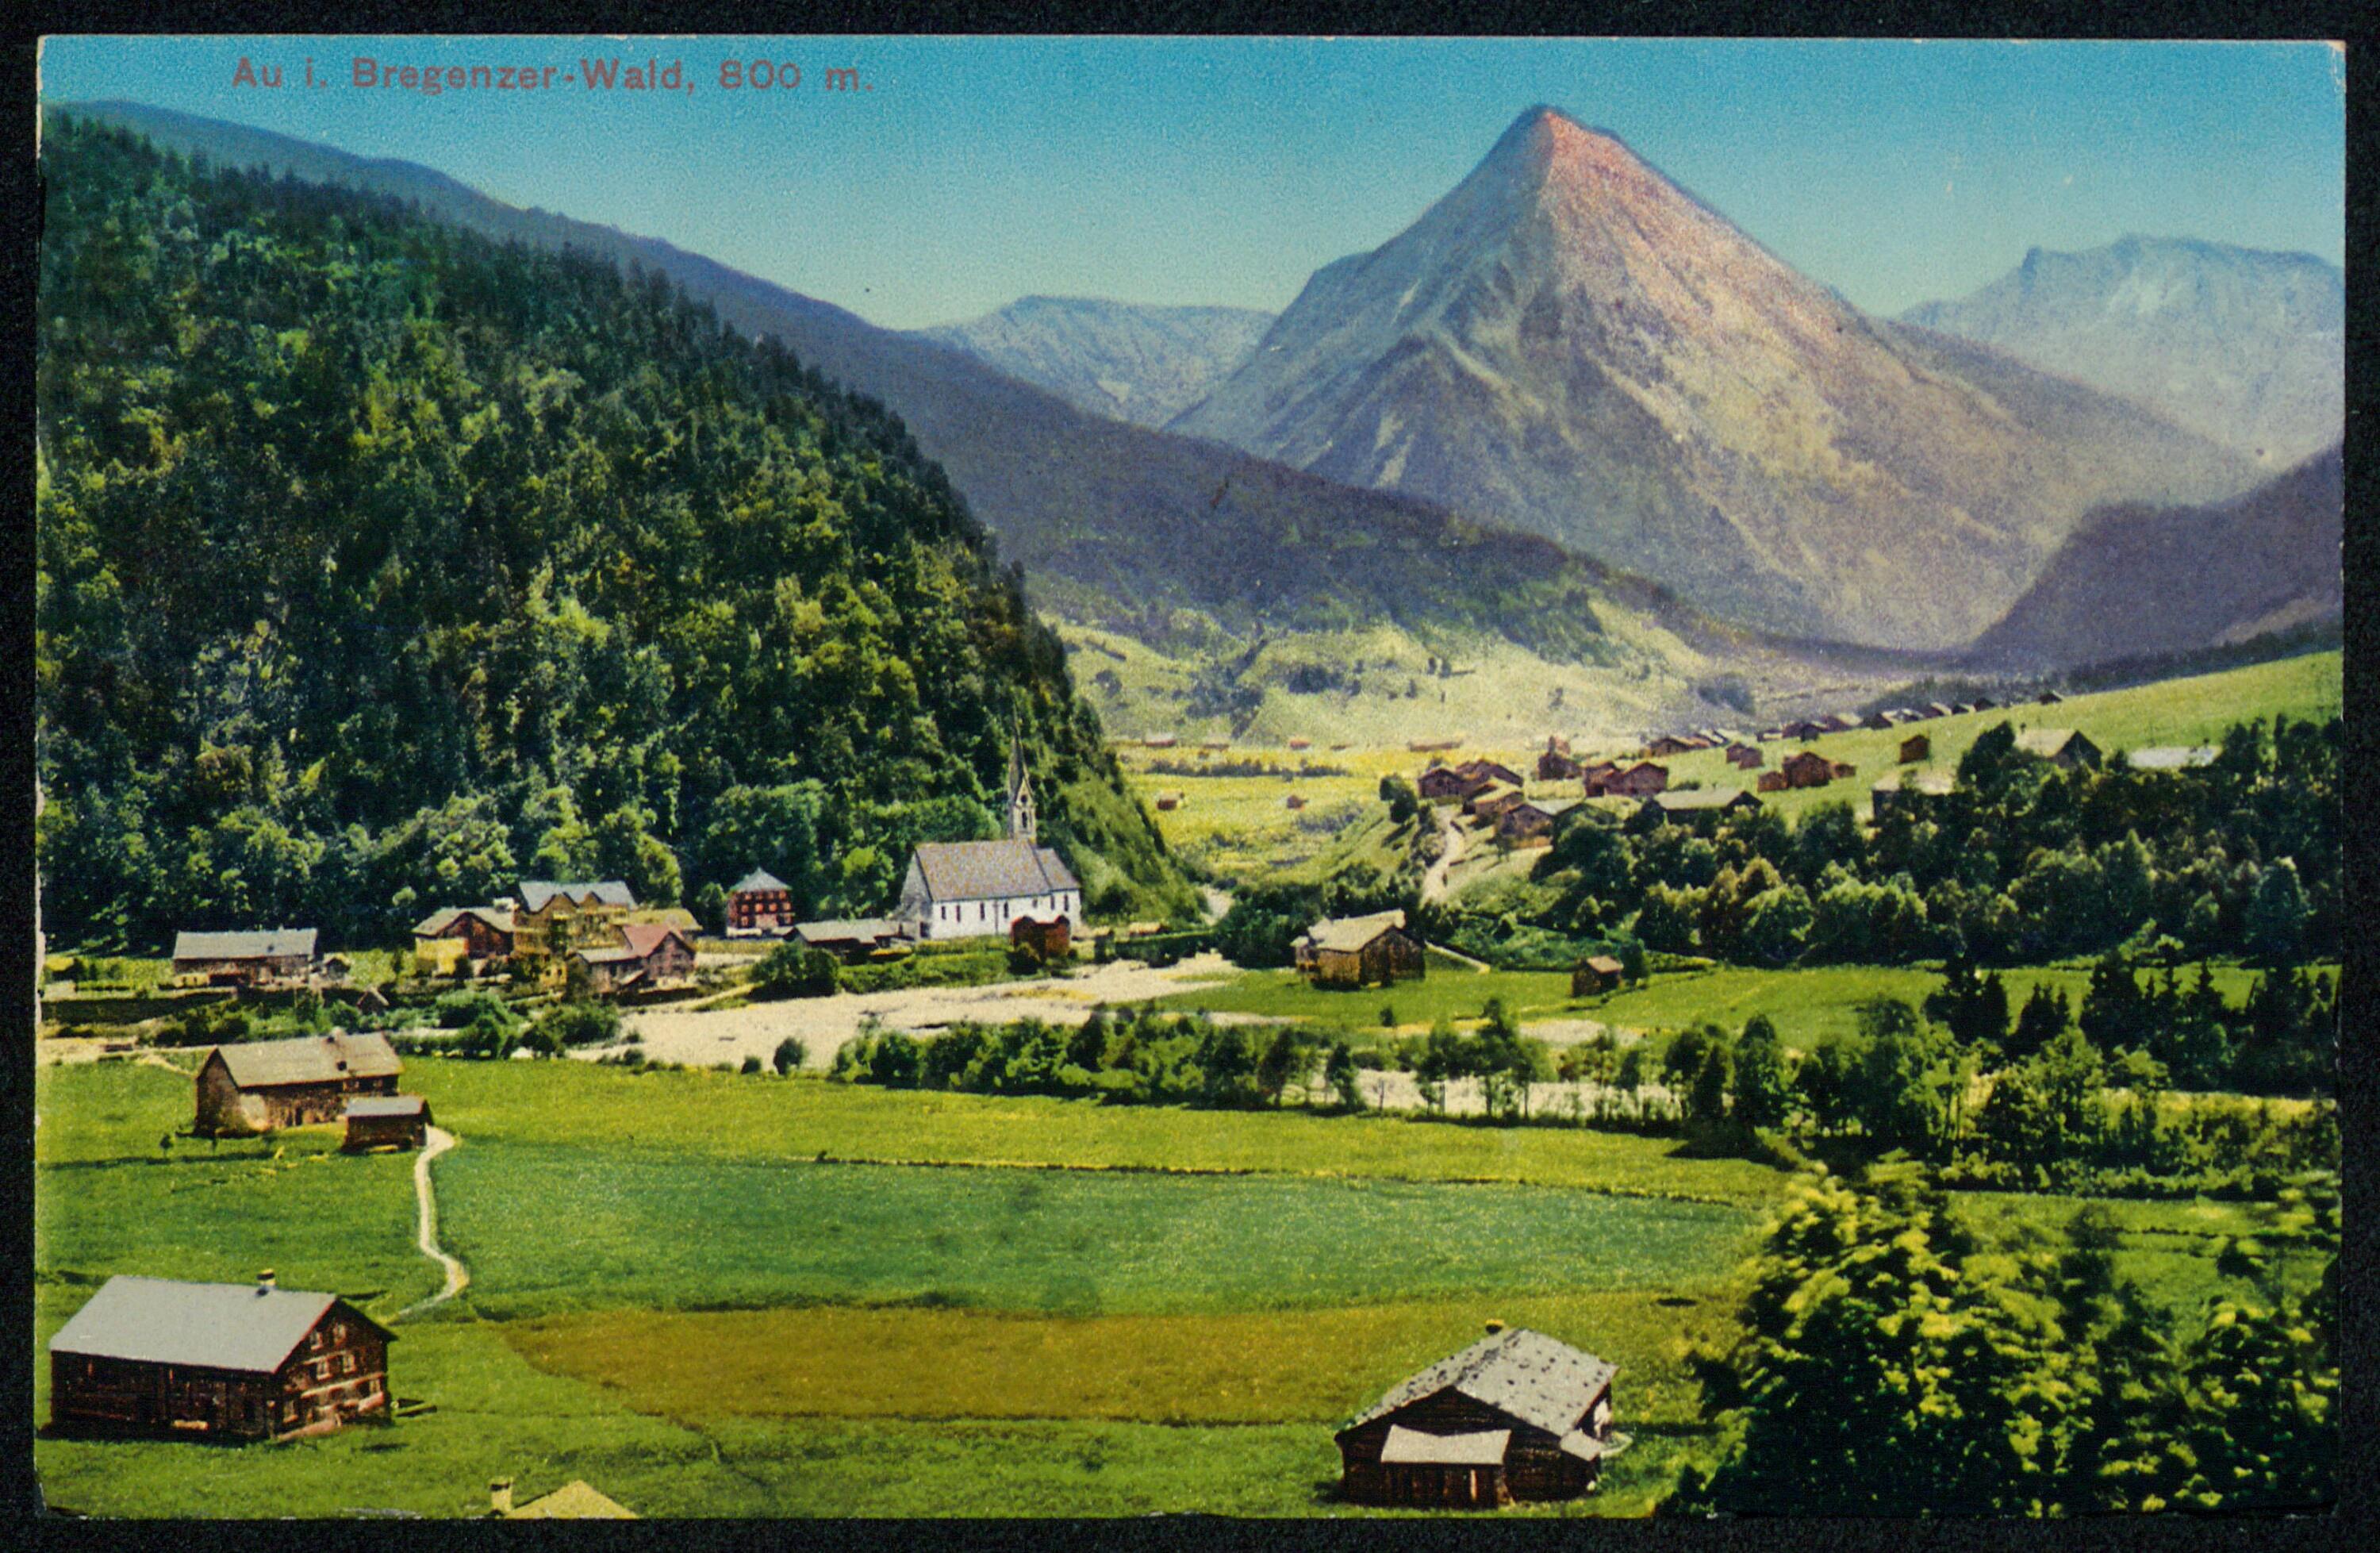 Au i. Bregenzer-Wald, 800 m.></div>


    <hr>
    <div class=